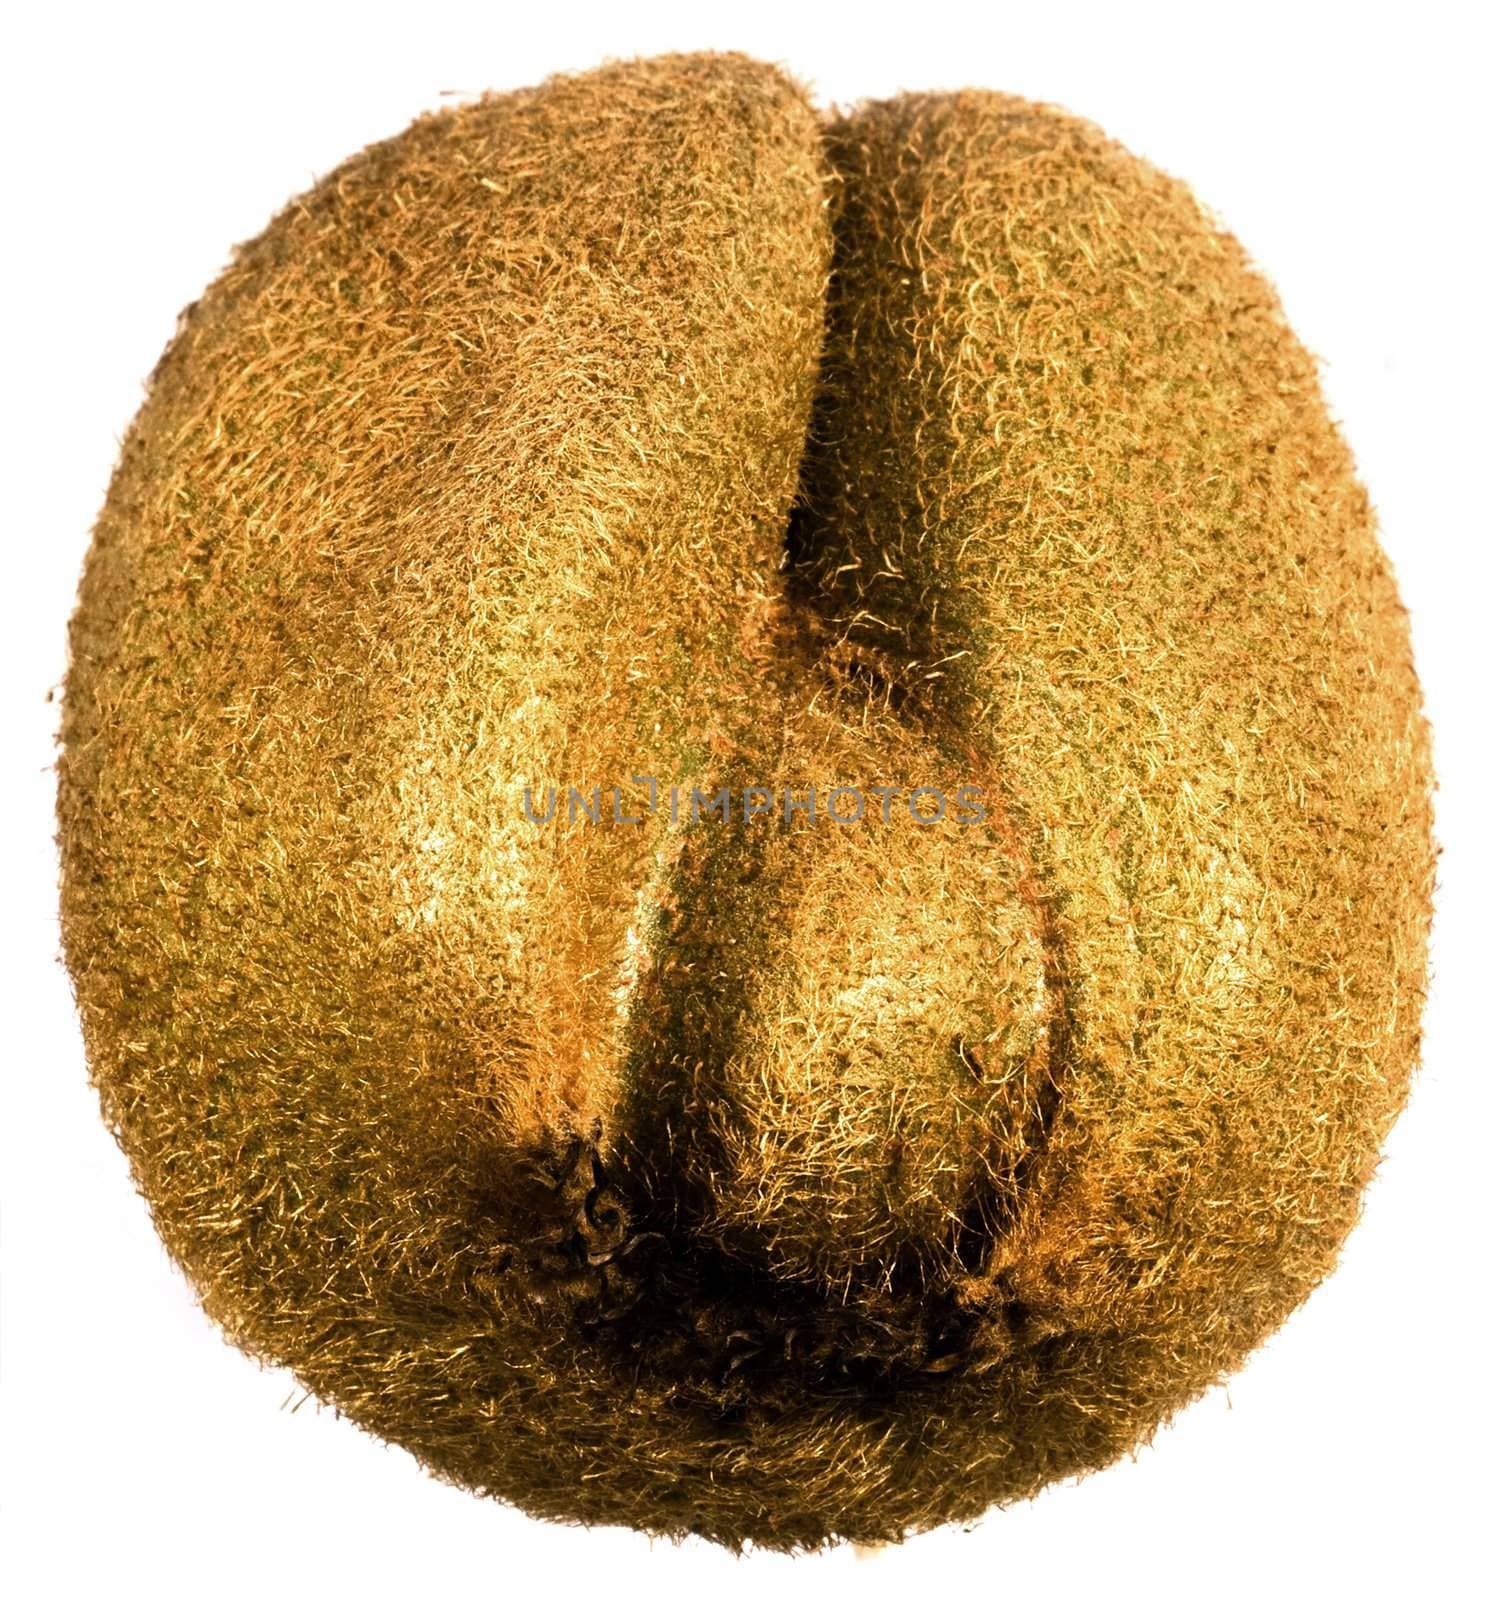 kiwifruit by gewoldi